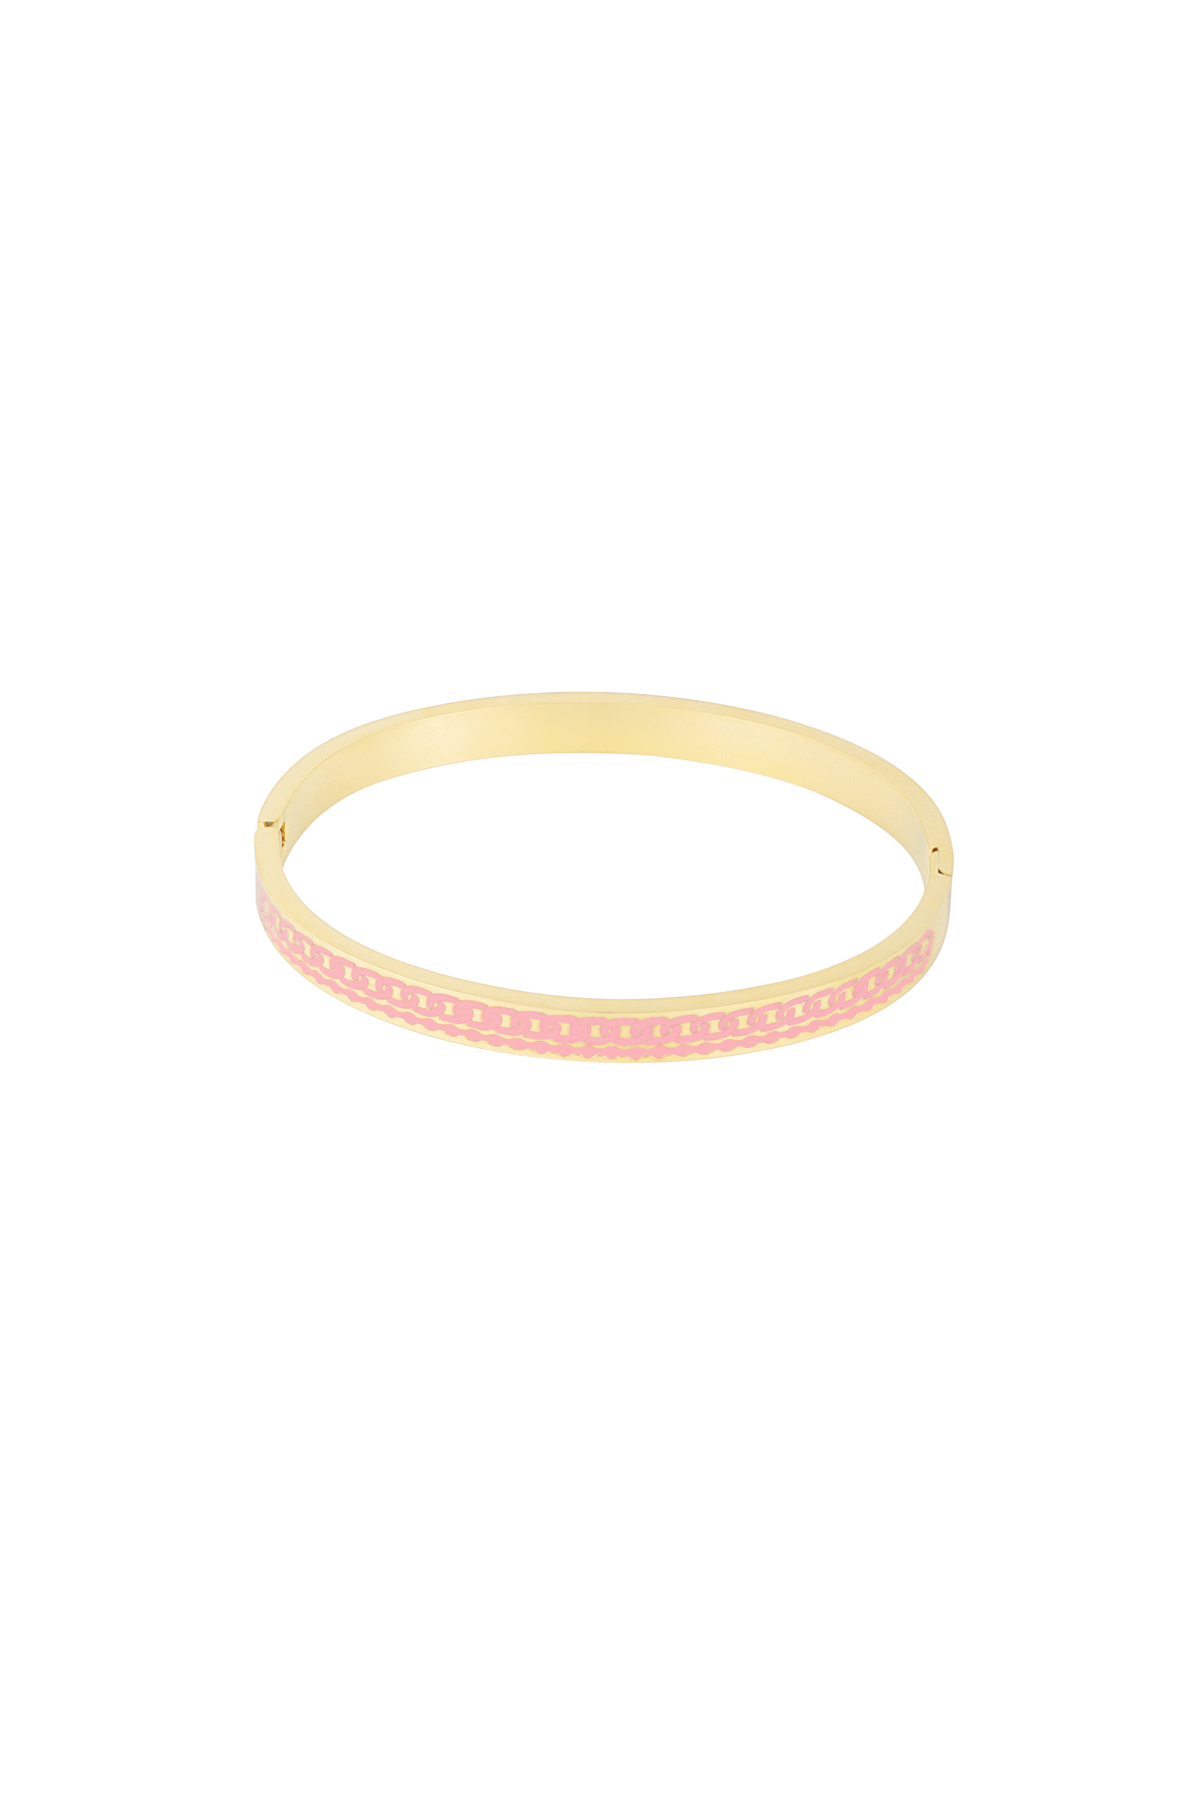 Colored bangle bracelet - pink/gold  h5 